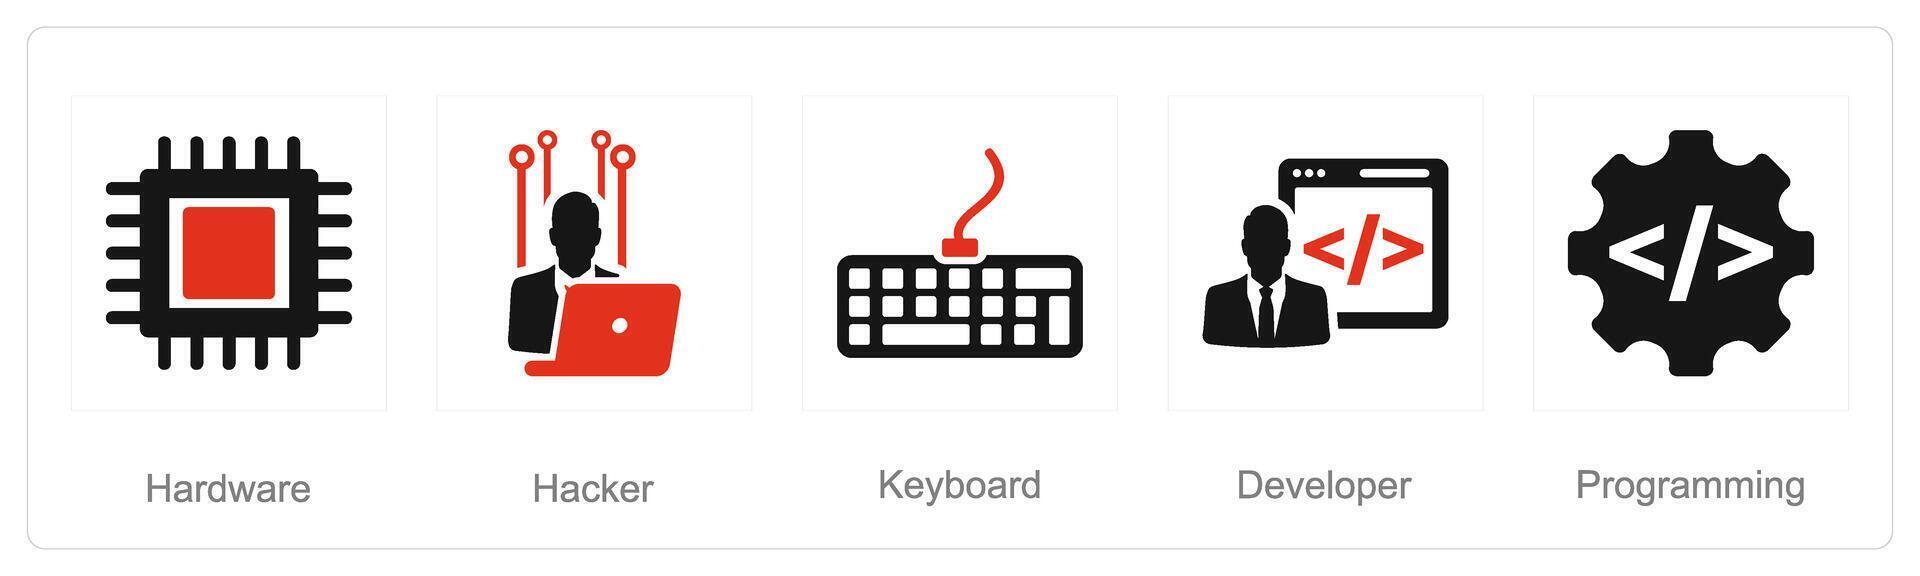 en uppsättning av 5 internet dator ikoner som hacker, tangentbord, utvecklare vektor